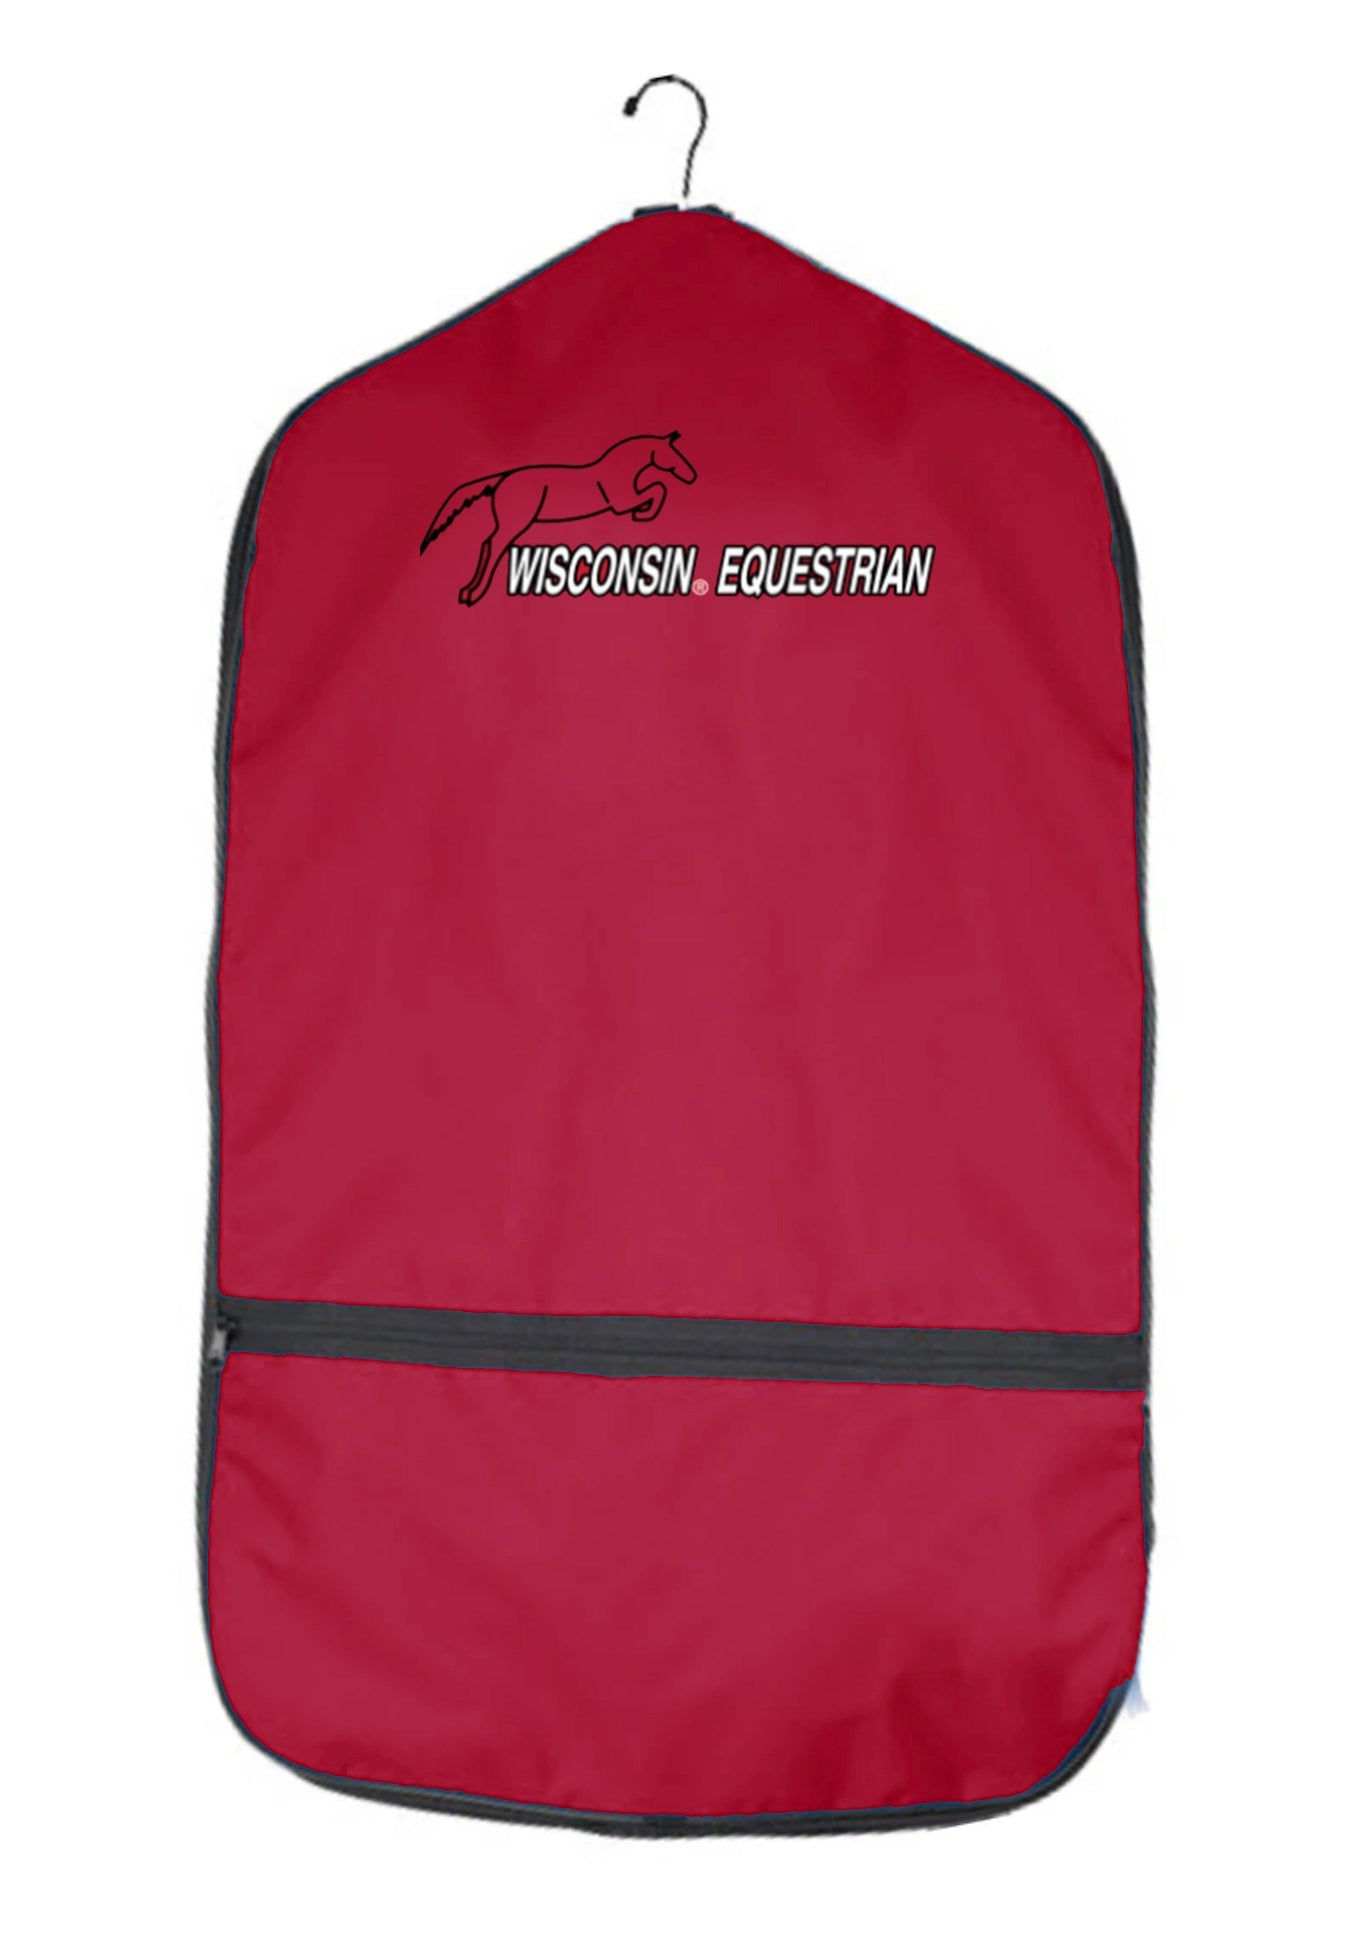 Wisconsin Equestrian Team World Class Equine Garment Bag - Original and XL